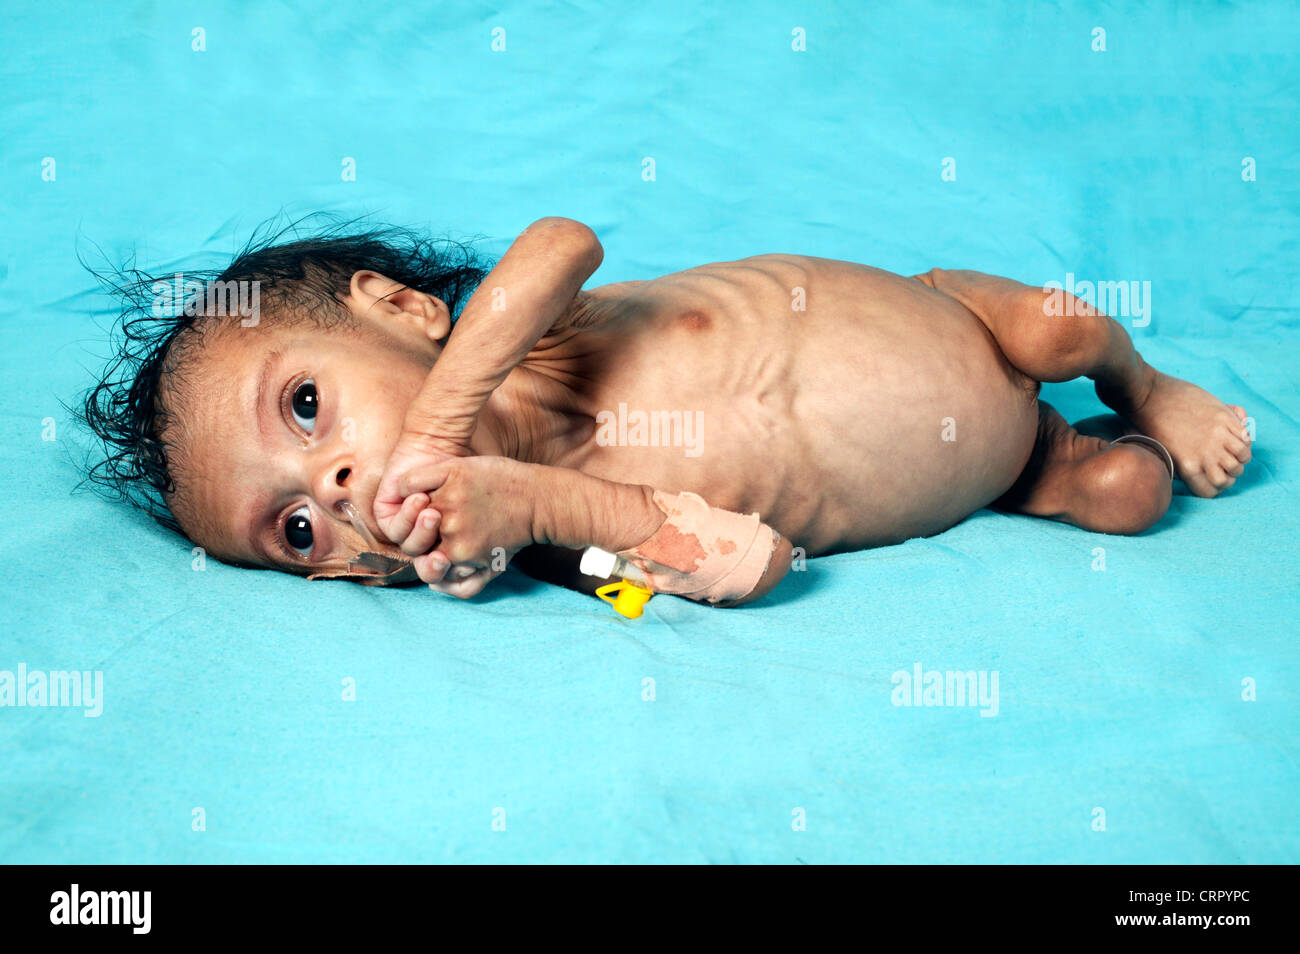 Niño que sufre distencion abdominal 3 meses - hepatoesplenomegalia y desnutrición Foto de stock